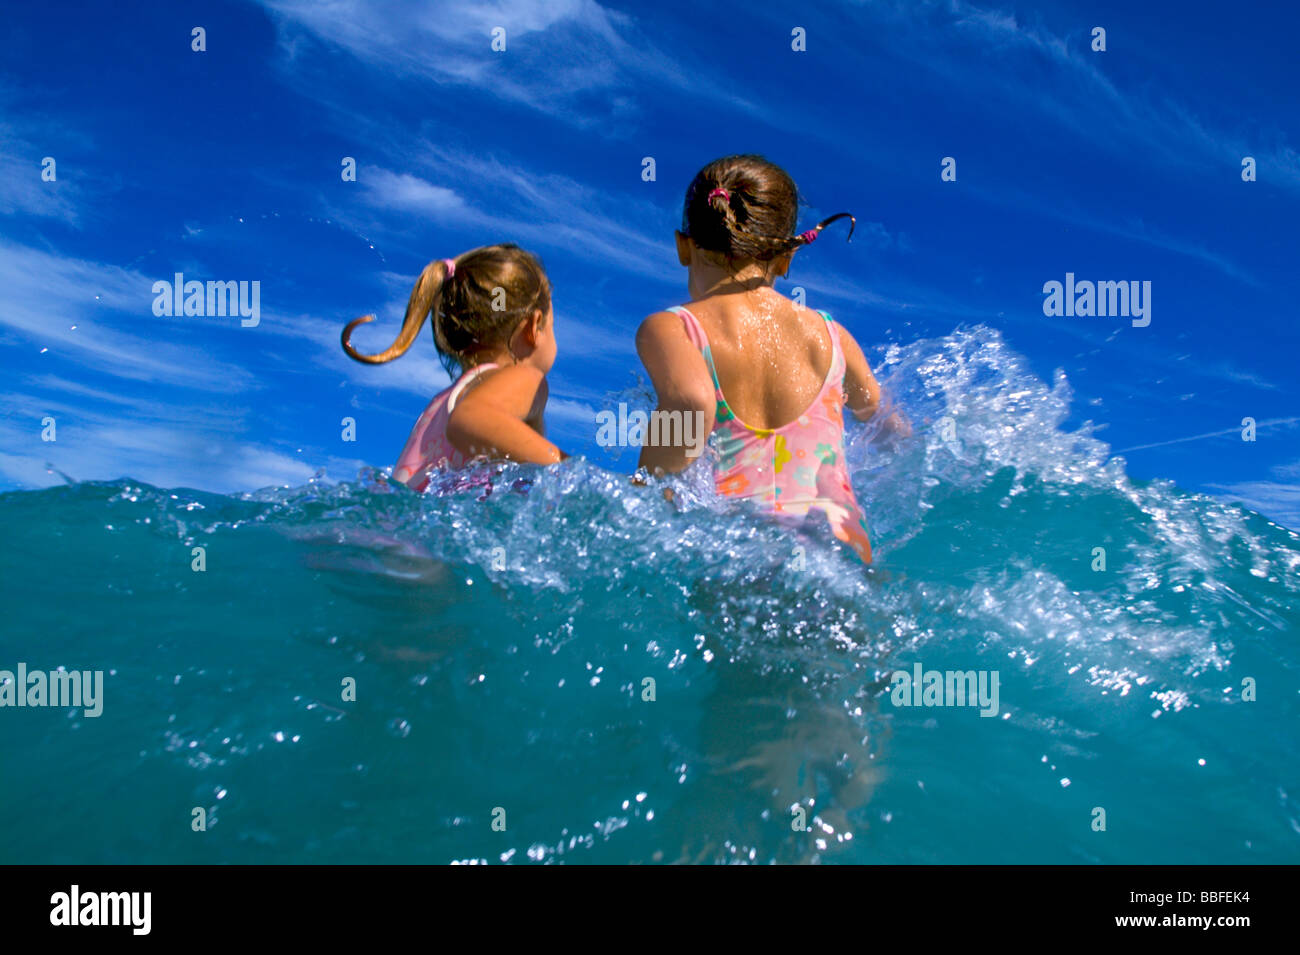 Zwei junge Mädchen spielen in den Wellen des Ozeans mit blauem Himmel. Dieses Bild hat viel Bewegungsunschärfe, so dass die Mädchen nicht 100 % scharf sind. Stockfoto